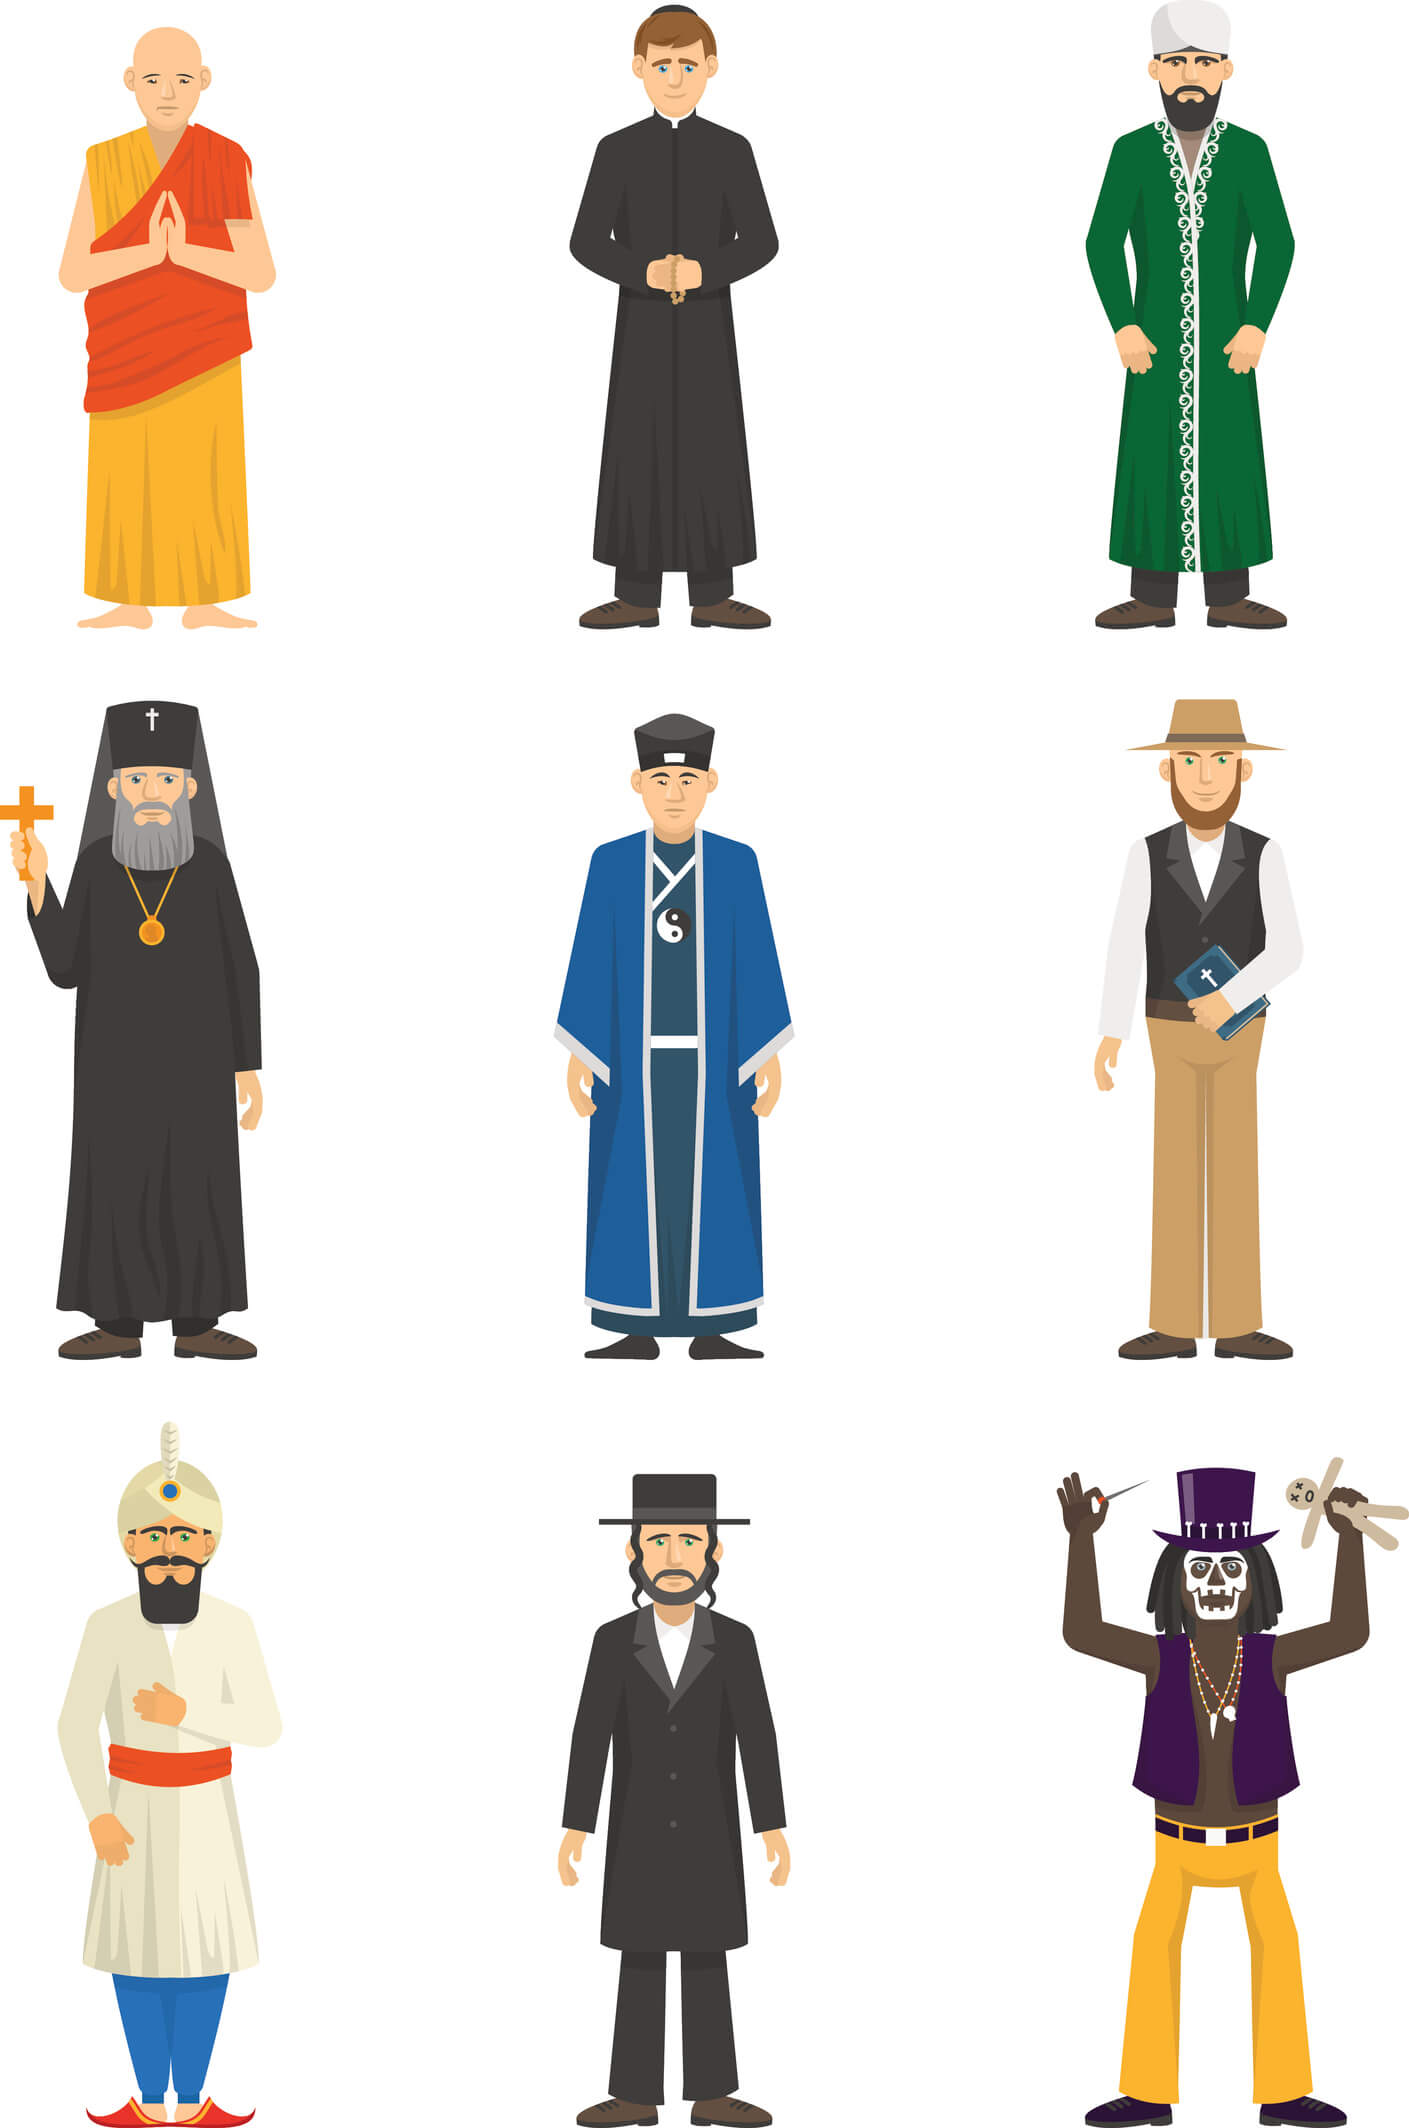 Representatives of major religious faiths. 